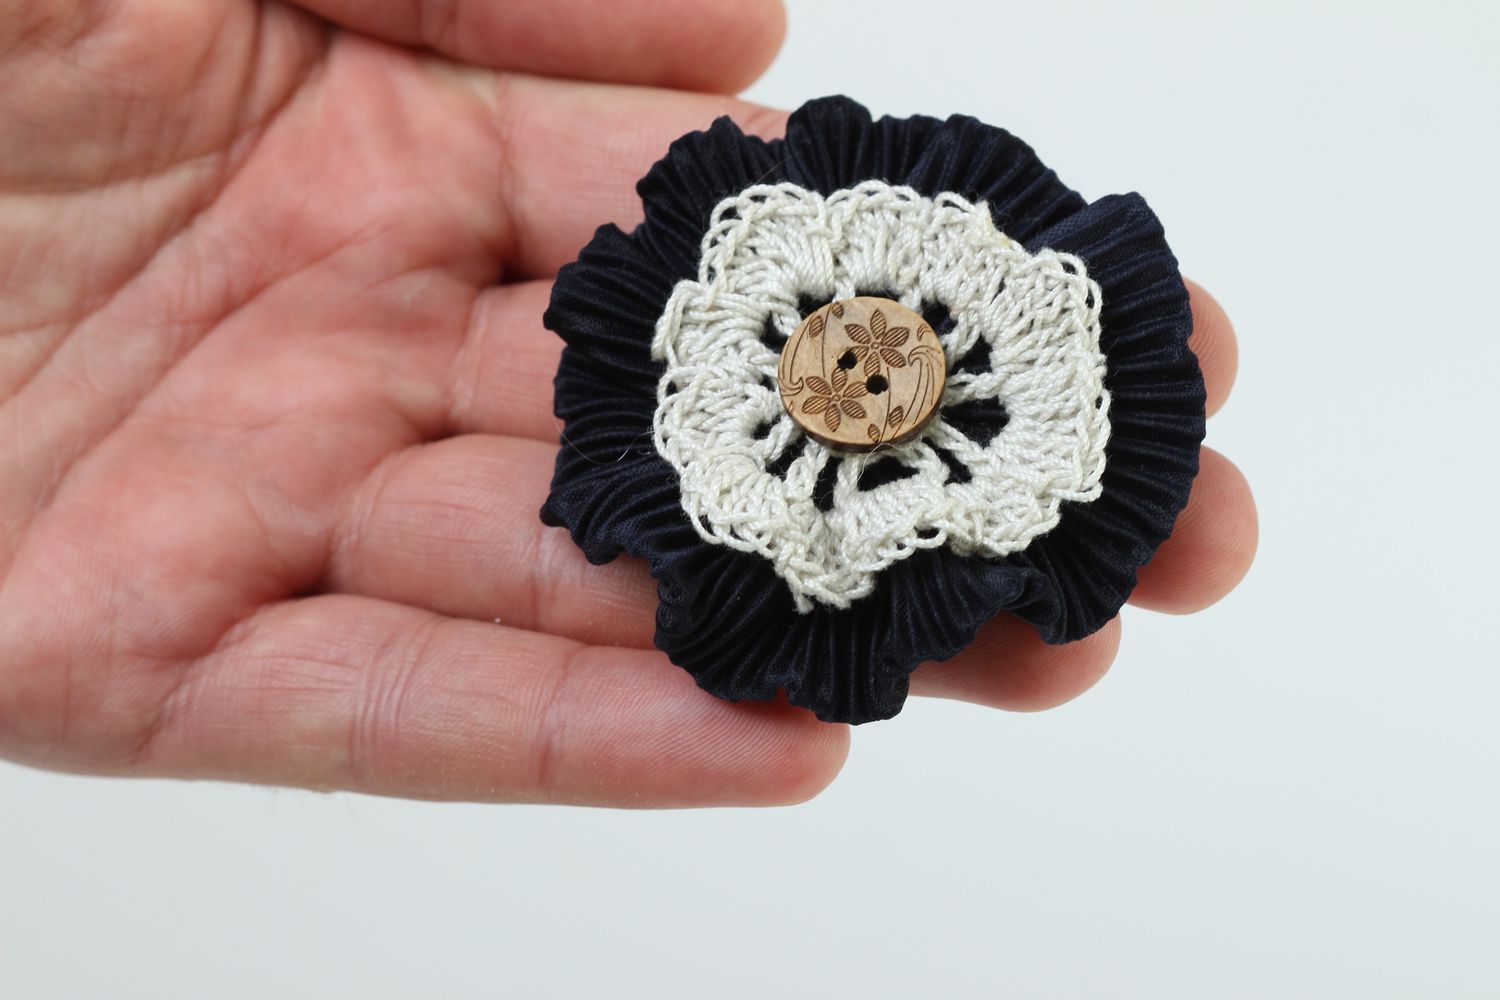 Handmade jewelry supplies crocheted flower crochet flower hair clips supplies photo 5